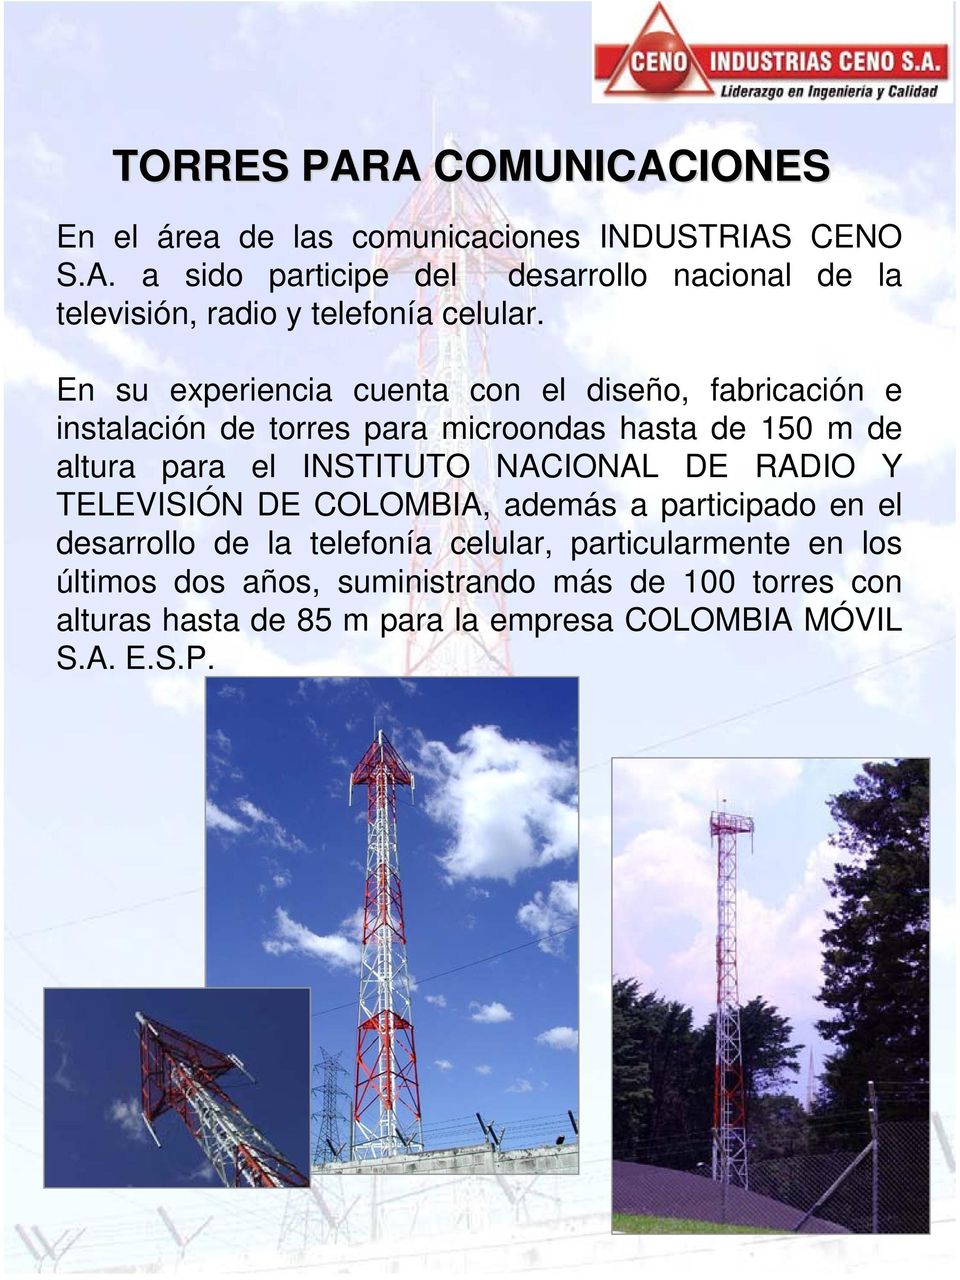 NACIONAL DE RADIO Y TELEVISIÓN DE COLOMBIA, además a participado en el desarrollo de la telefonía celular, particularmente en los últimos